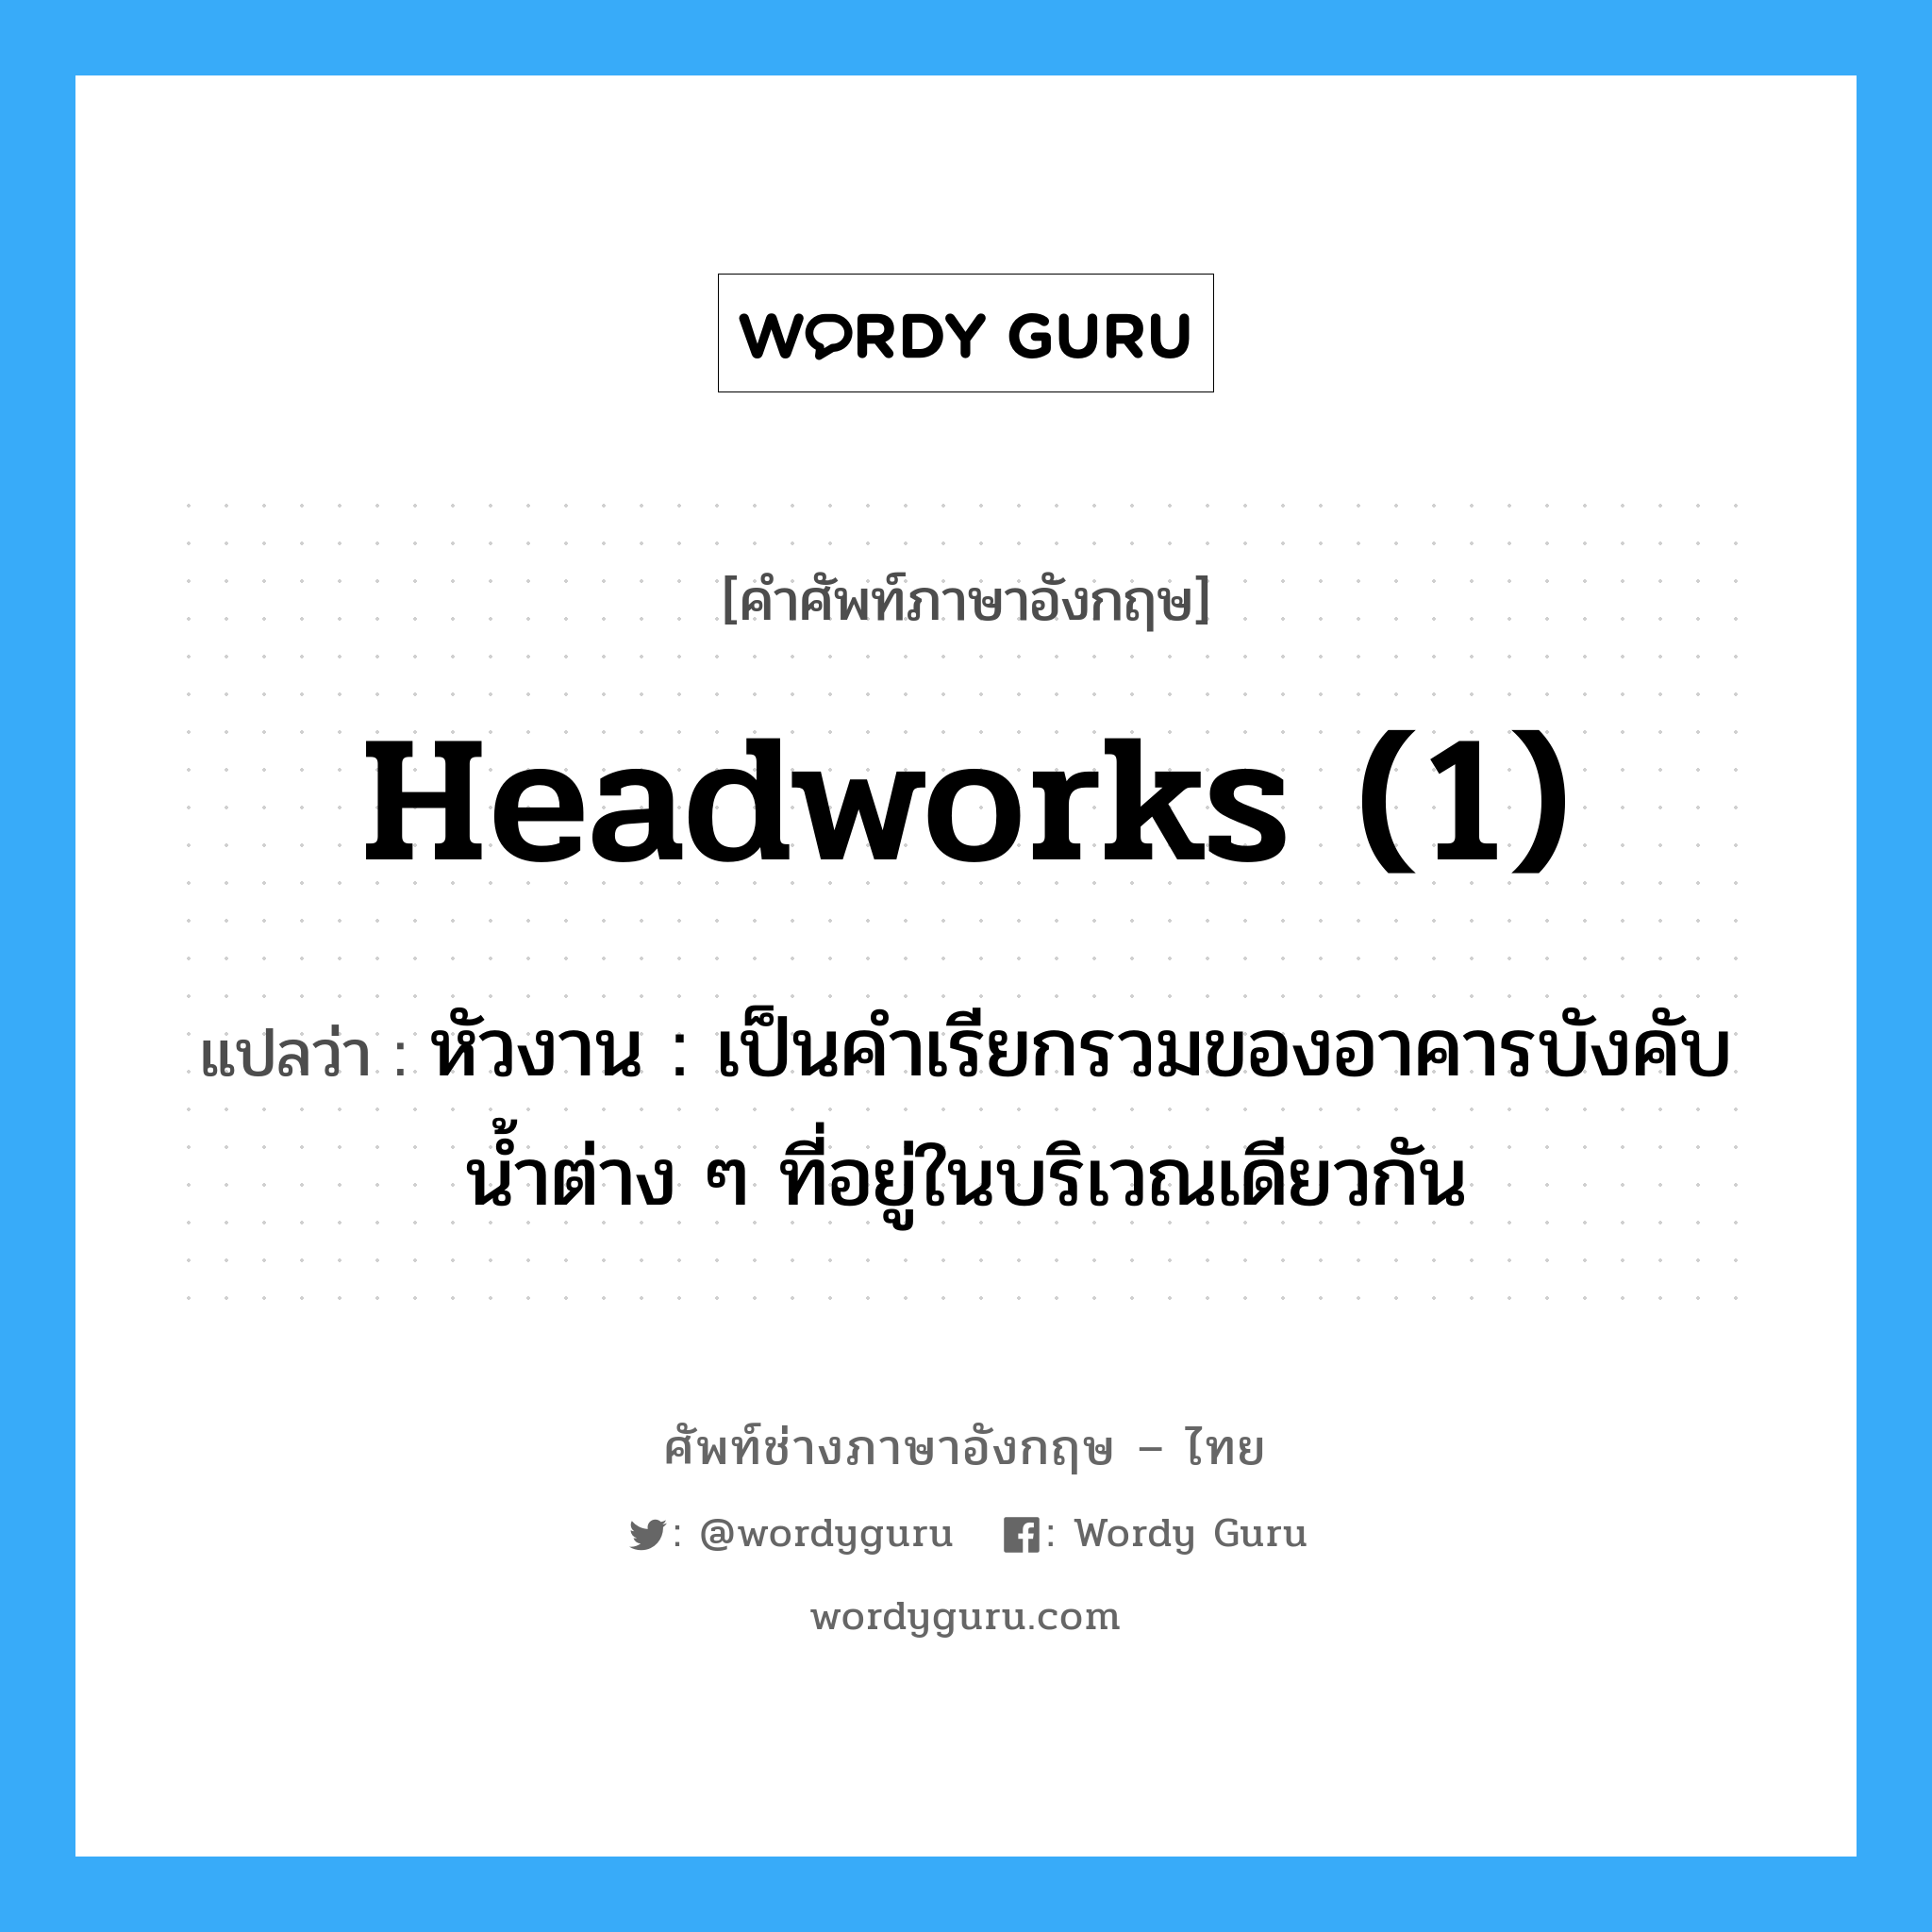 headworks (1) แปลว่า?, คำศัพท์ช่างภาษาอังกฤษ - ไทย headworks (1) คำศัพท์ภาษาอังกฤษ headworks (1) แปลว่า หัวงาน : เป็นคำเรียกรวมของอาคารบังคับน้ำต่าง ๆ ที่อยู่ในบริเวณเดียวกัน